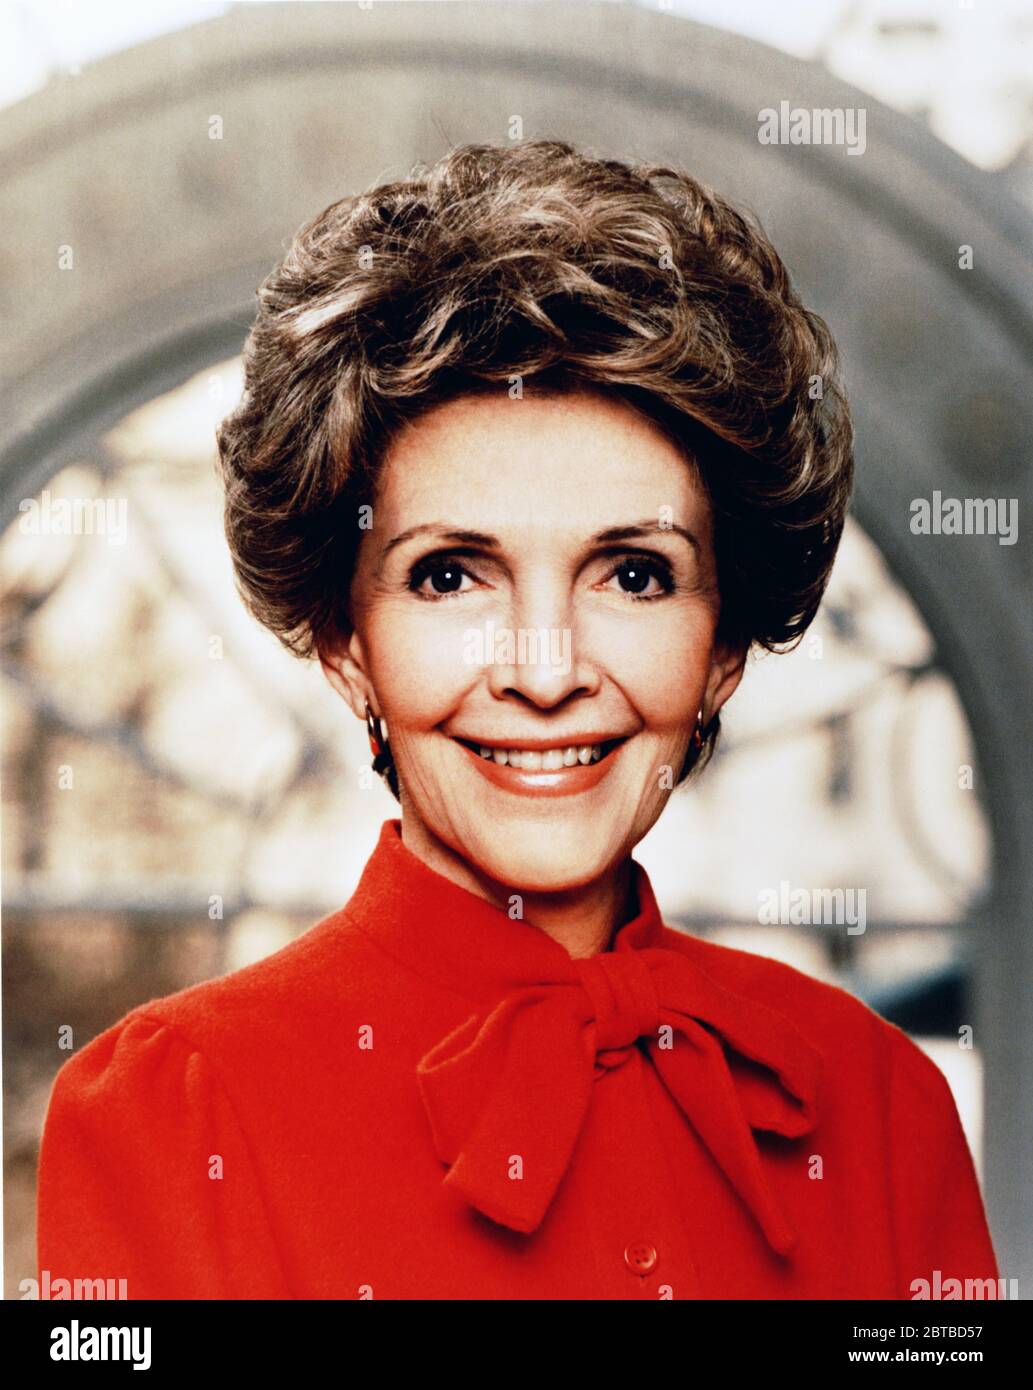 1981 , WASHINGTON D.C. , USA : l'ex attrice e la prima Lady NANCY REAGAN ( Nancy Davis , 1921 - 2016 ). Foto del fotografo ufficiale della Casa Bianca . Sposato con IL 40° presidente degli Stati Uniti RONALD REAGAN ( 1911 - 2004 ), incaricato dal 1981 al 1989 . In questa foto subito dopo la Parata inaugurale di Washington, D.C. il giorno dell'Inaugurazione, 1981 . - prima Signora degli Stati Uniti - POLITICO - POLITICO - POLITICA - POLITICA - USA - ritratto - ritratto - abito rosso - PRESIDENTE DELLA REPUBBLICA DEGLI STATI Uniti d'AMERICA --- Archivio GBB Foto Stock